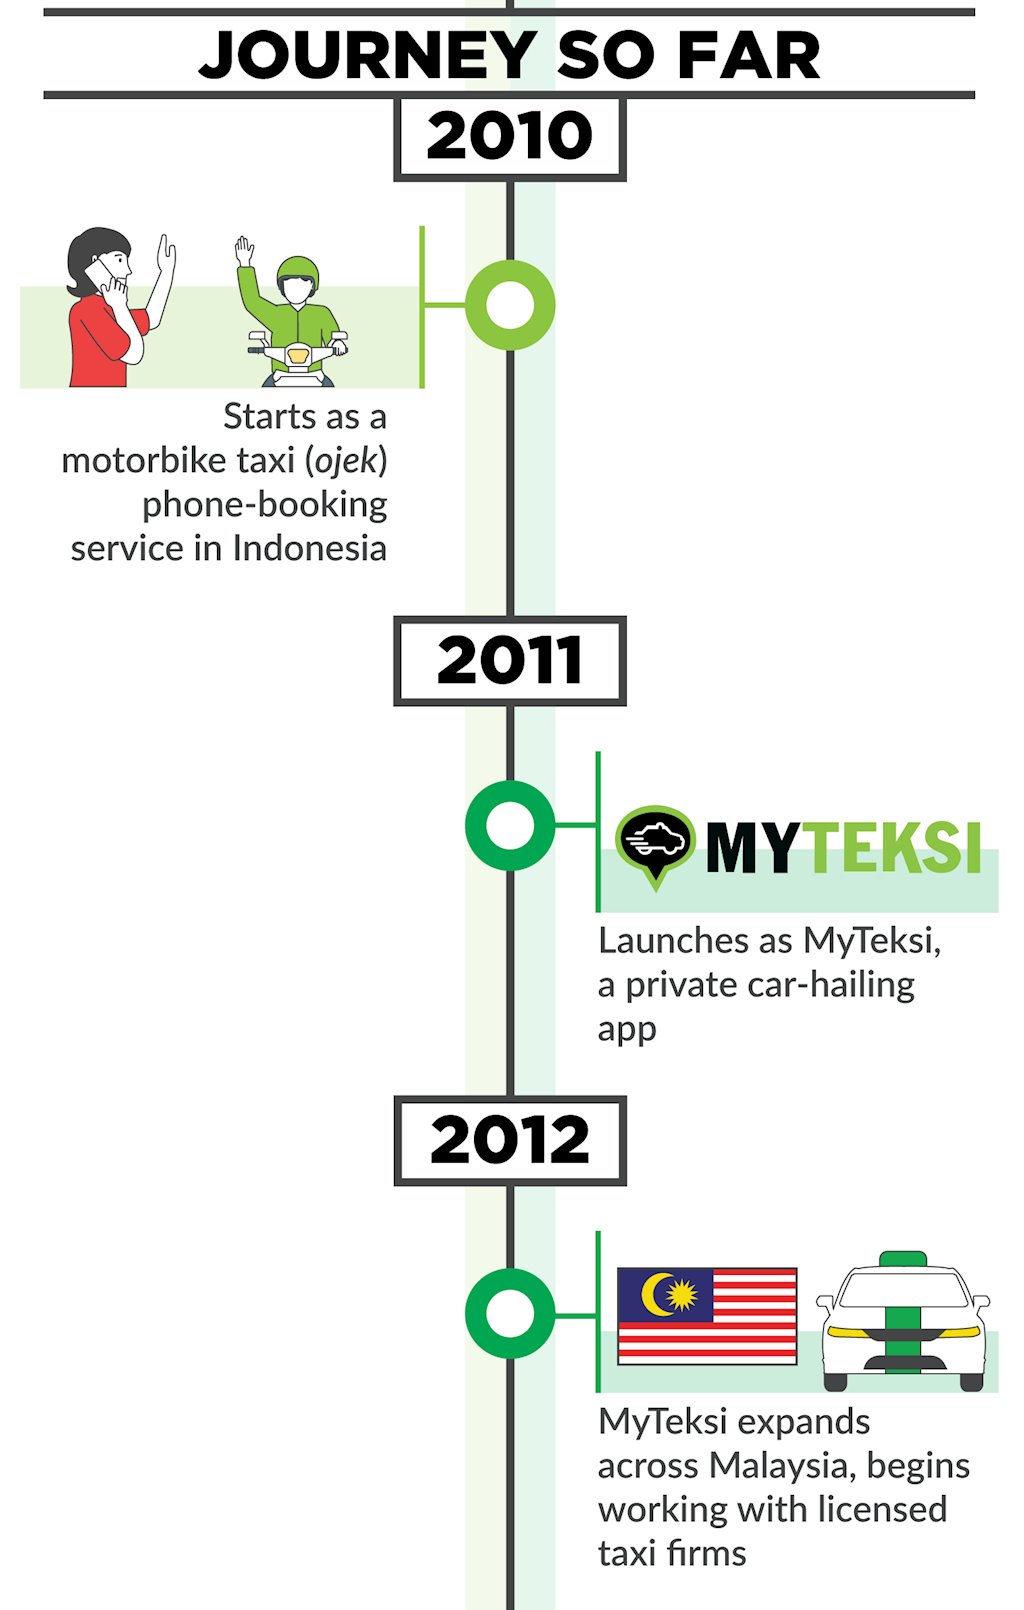 Infographic: Cuộc đua trở thành “siêu ứng dụng” của Grab và Go-Jek